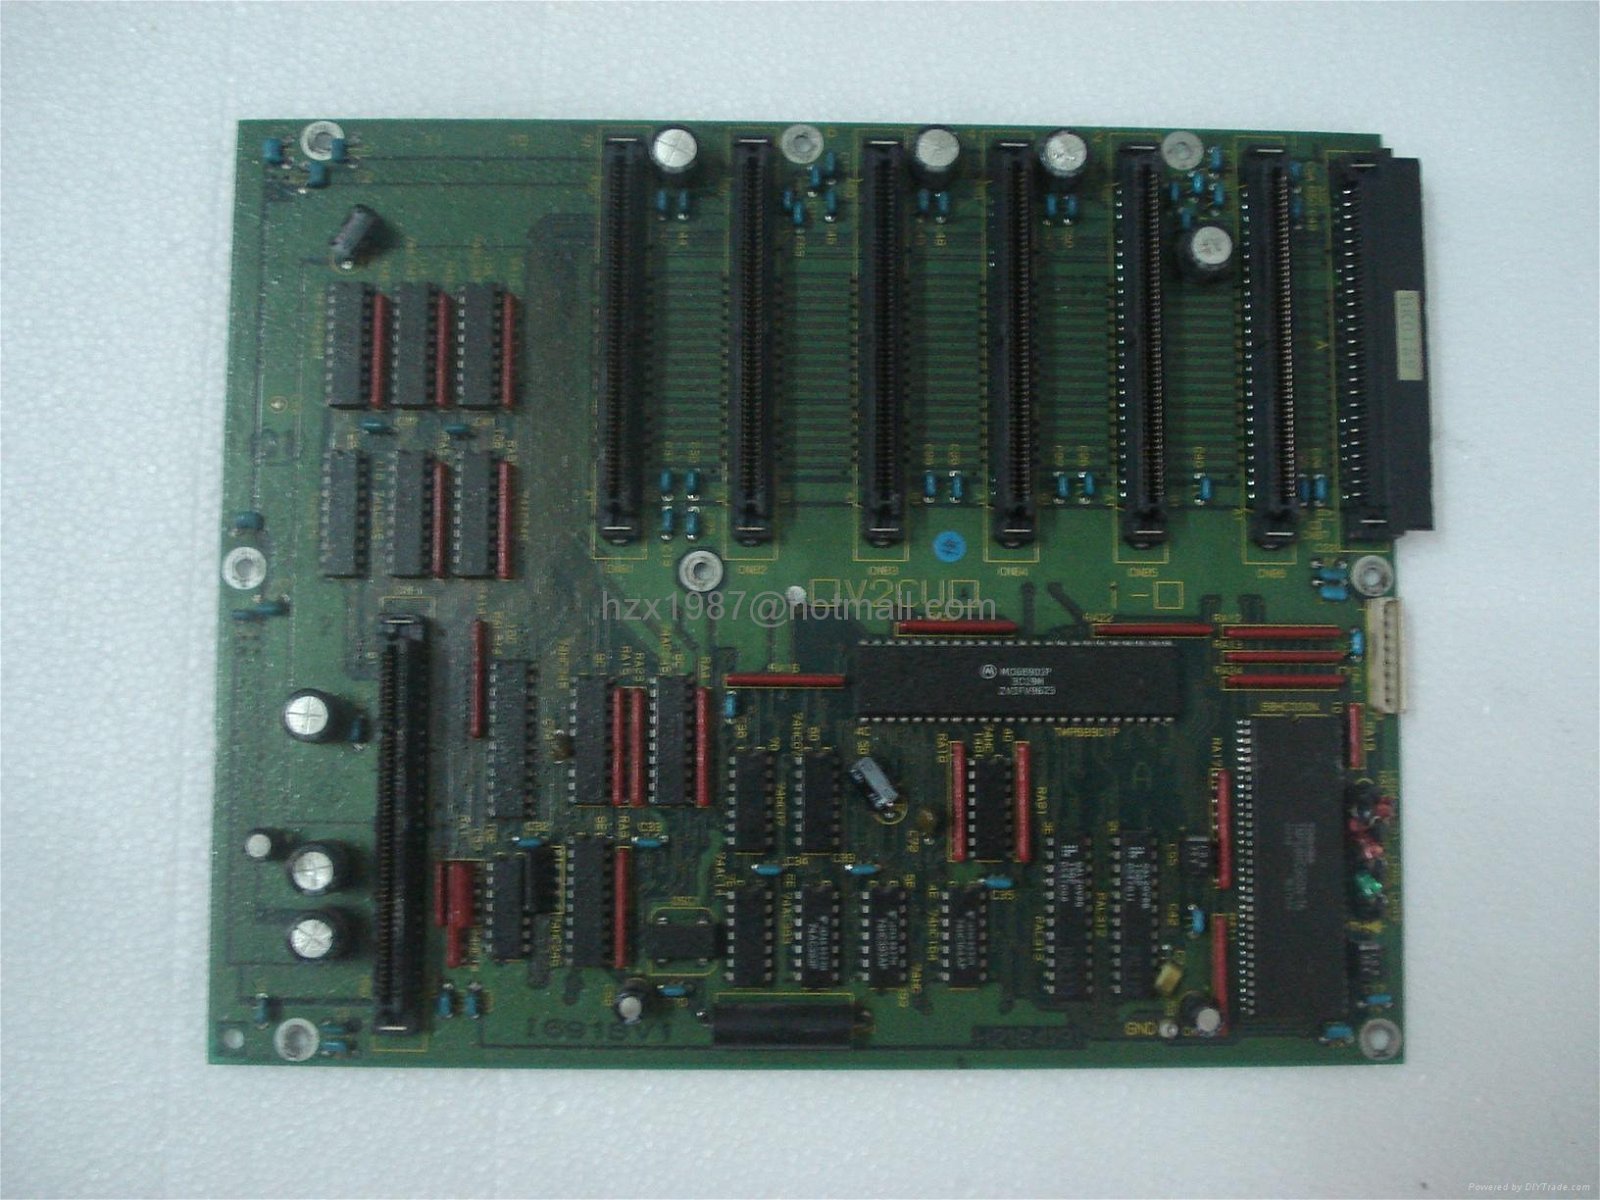 SELL Toshiba machine board ,H2184332 ,H2218125 ,H2184191 ,H2184371,private price 4